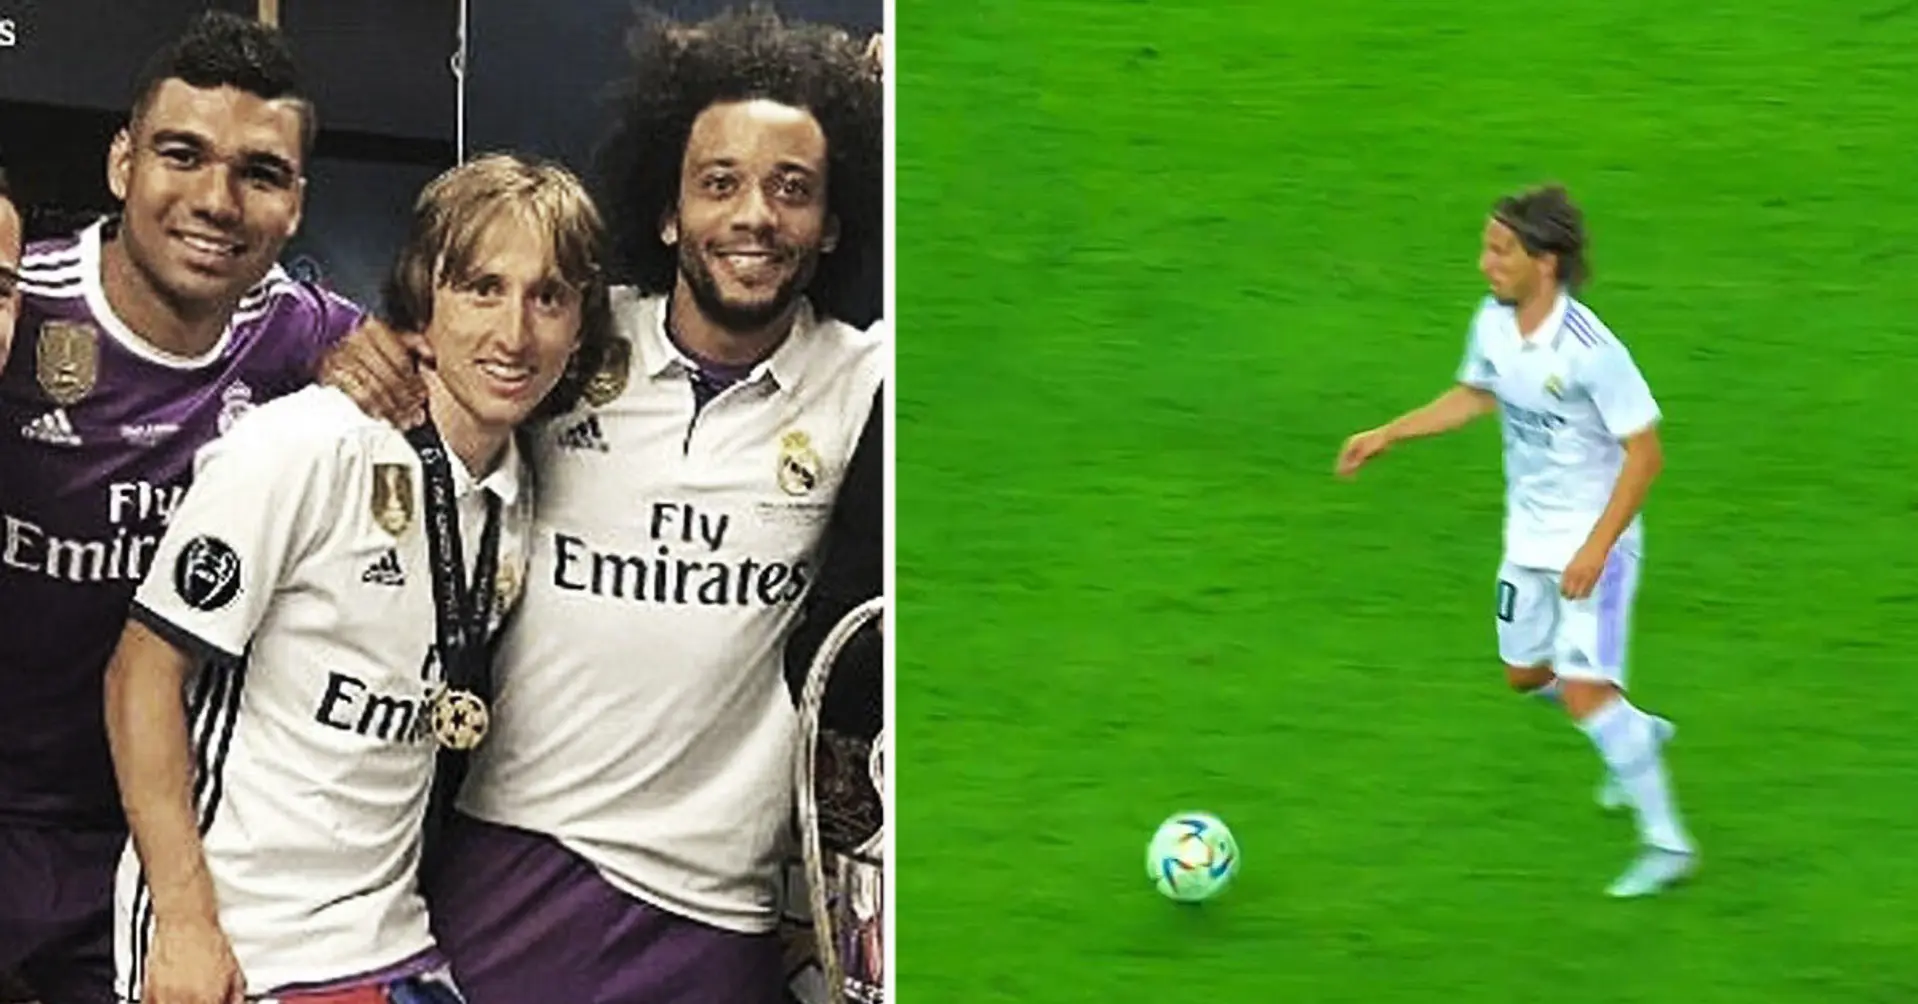 Die Spieler von Real Madrid zu Luka Modric: "Du bist ja ein Kroate!" Modrics brillante Antwort: "Ja, aber ich spiele wie ein Brasilianer."  